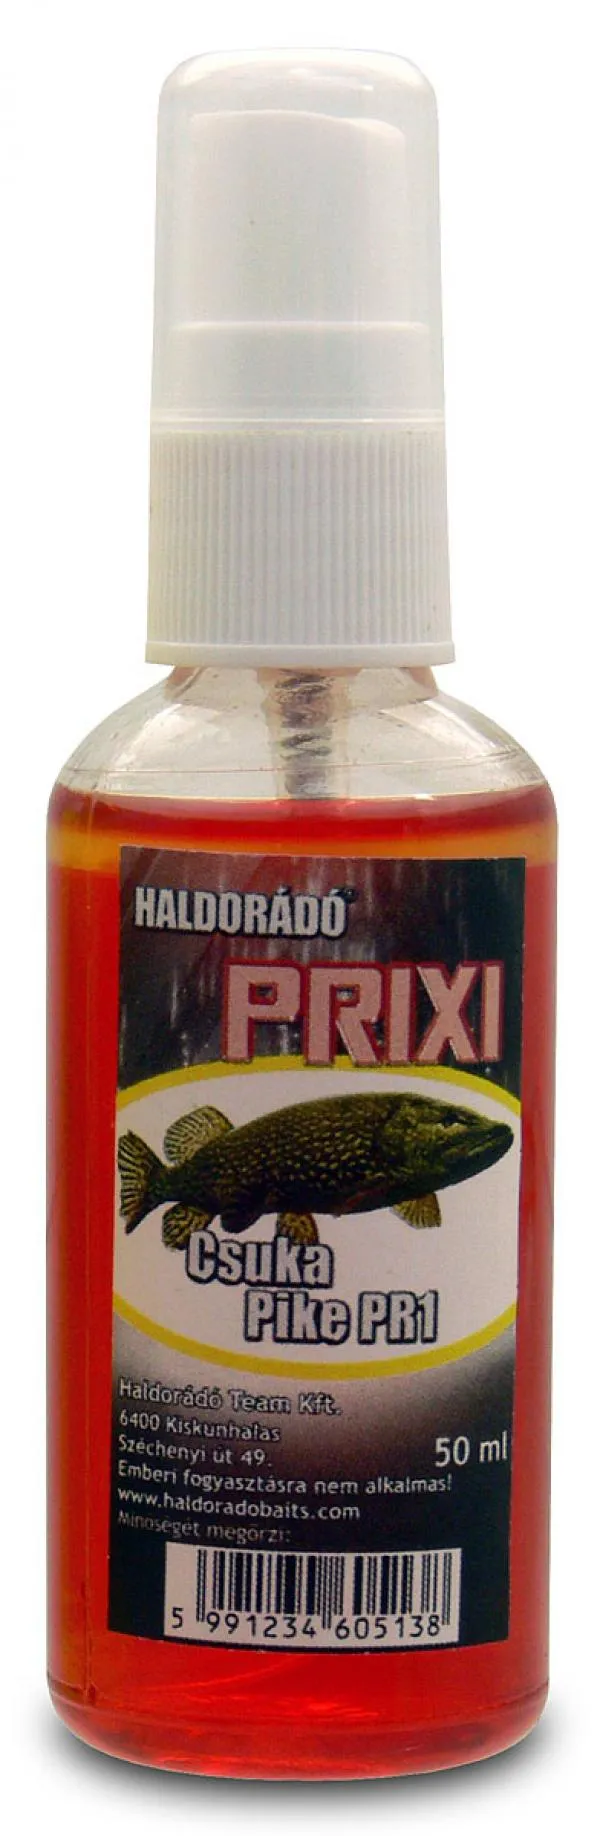 SNECI - Horgász webshop és horgászbolt - Haldorádó PRIXI ragadozó aroma spray - Csuka/Pike PR1